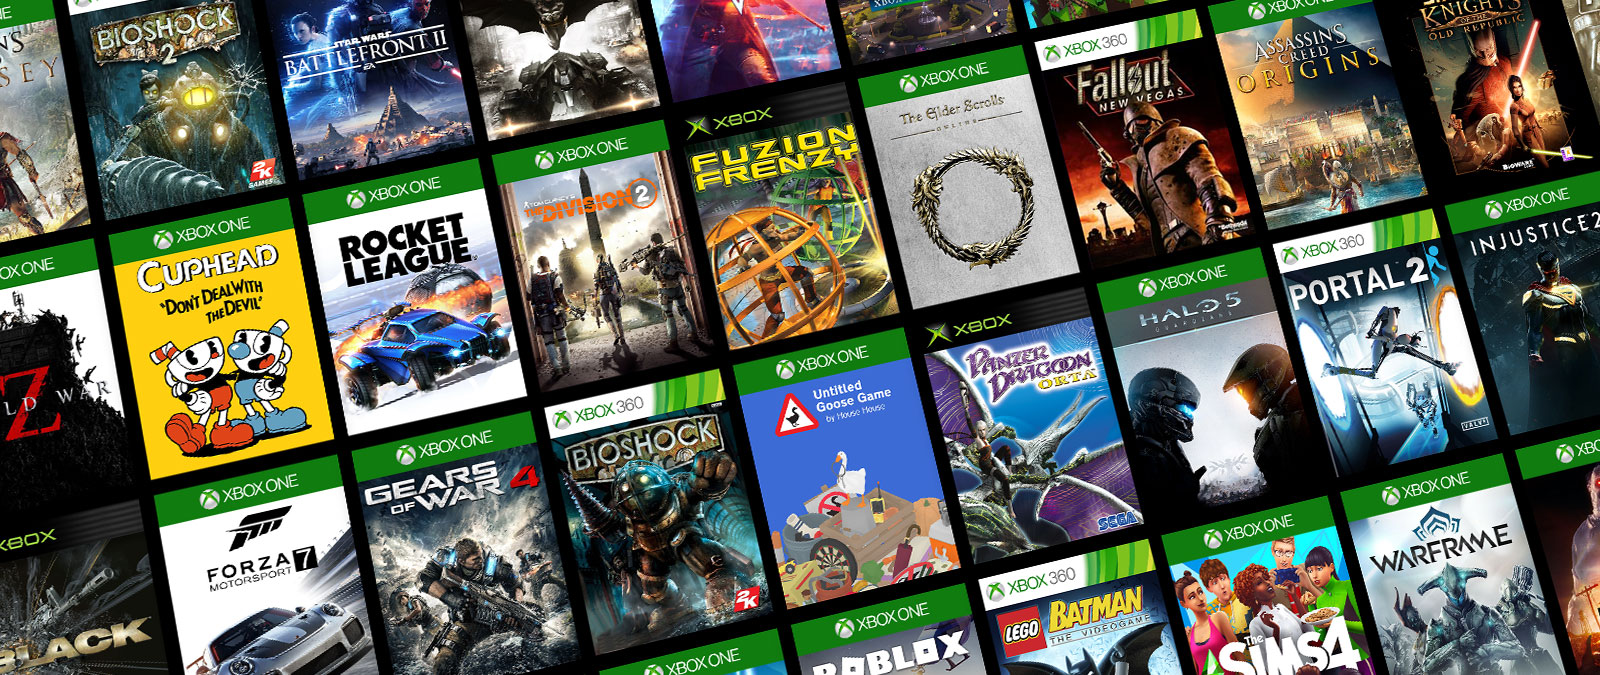 Jogos compatíveis com versões anteriores do Xbox